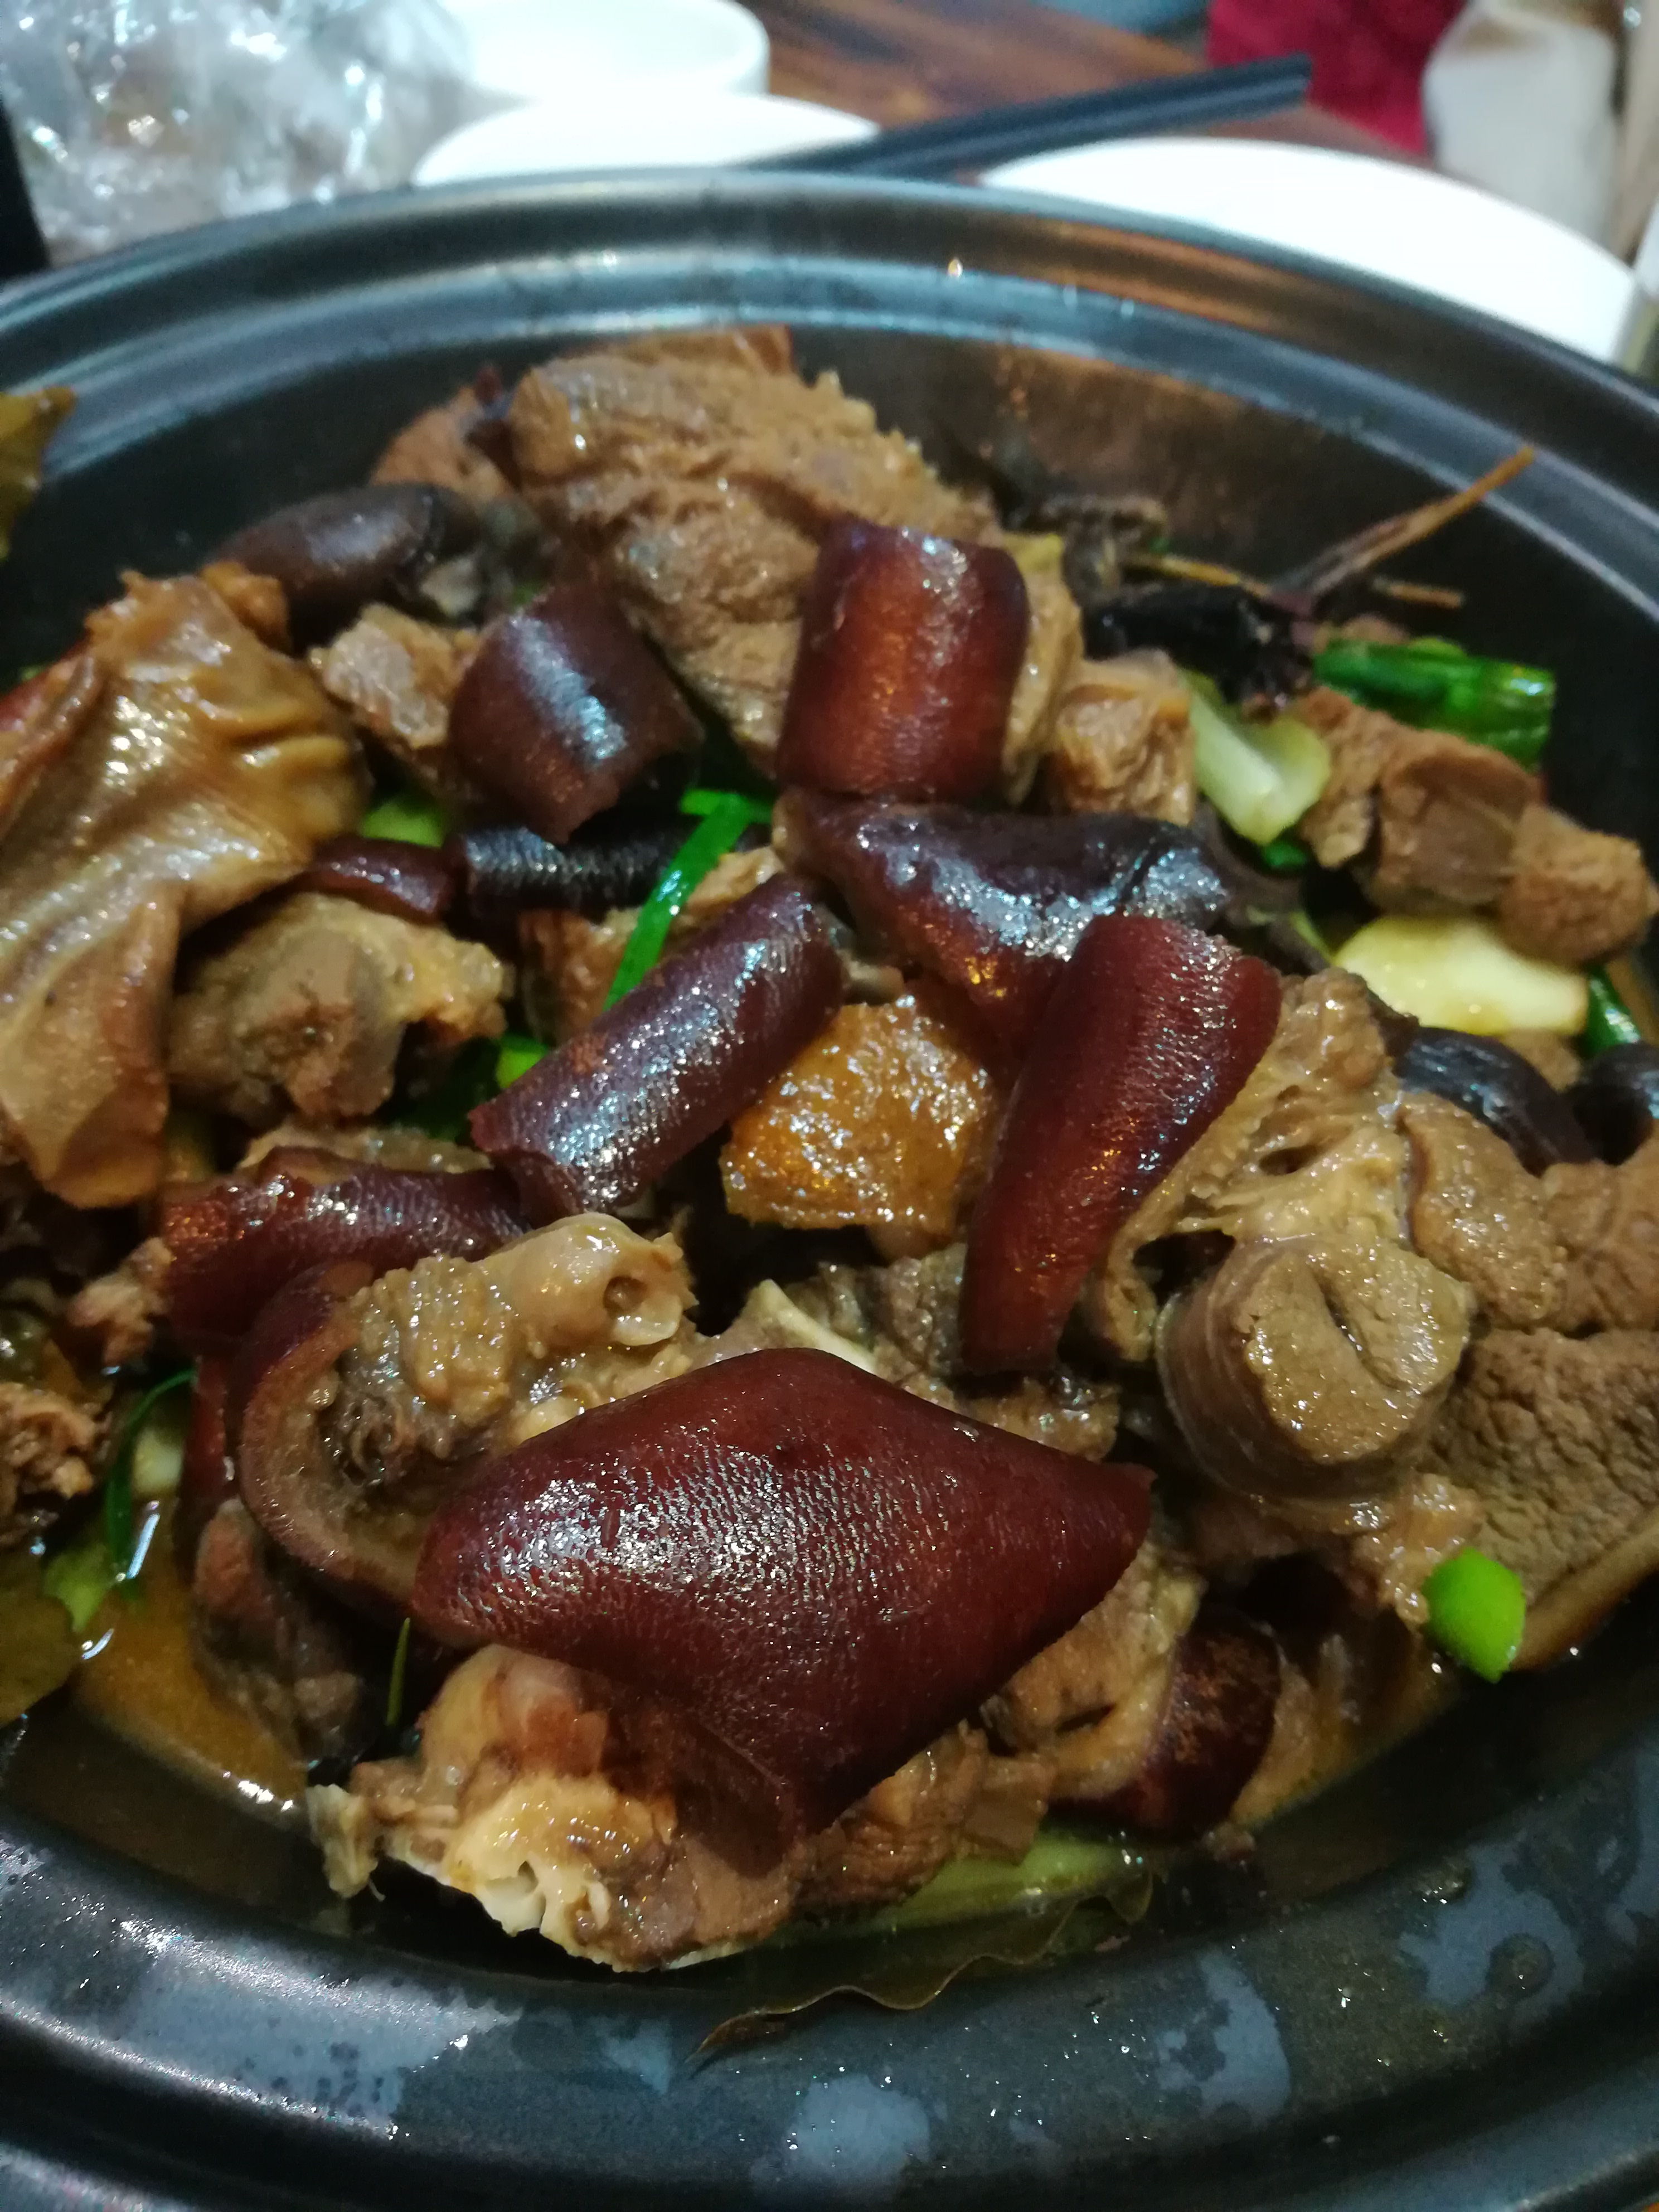 这干锅脆皮狗的带皮狗肉味道很熟悉,就是老南宁的做法,肉很香,皮特别